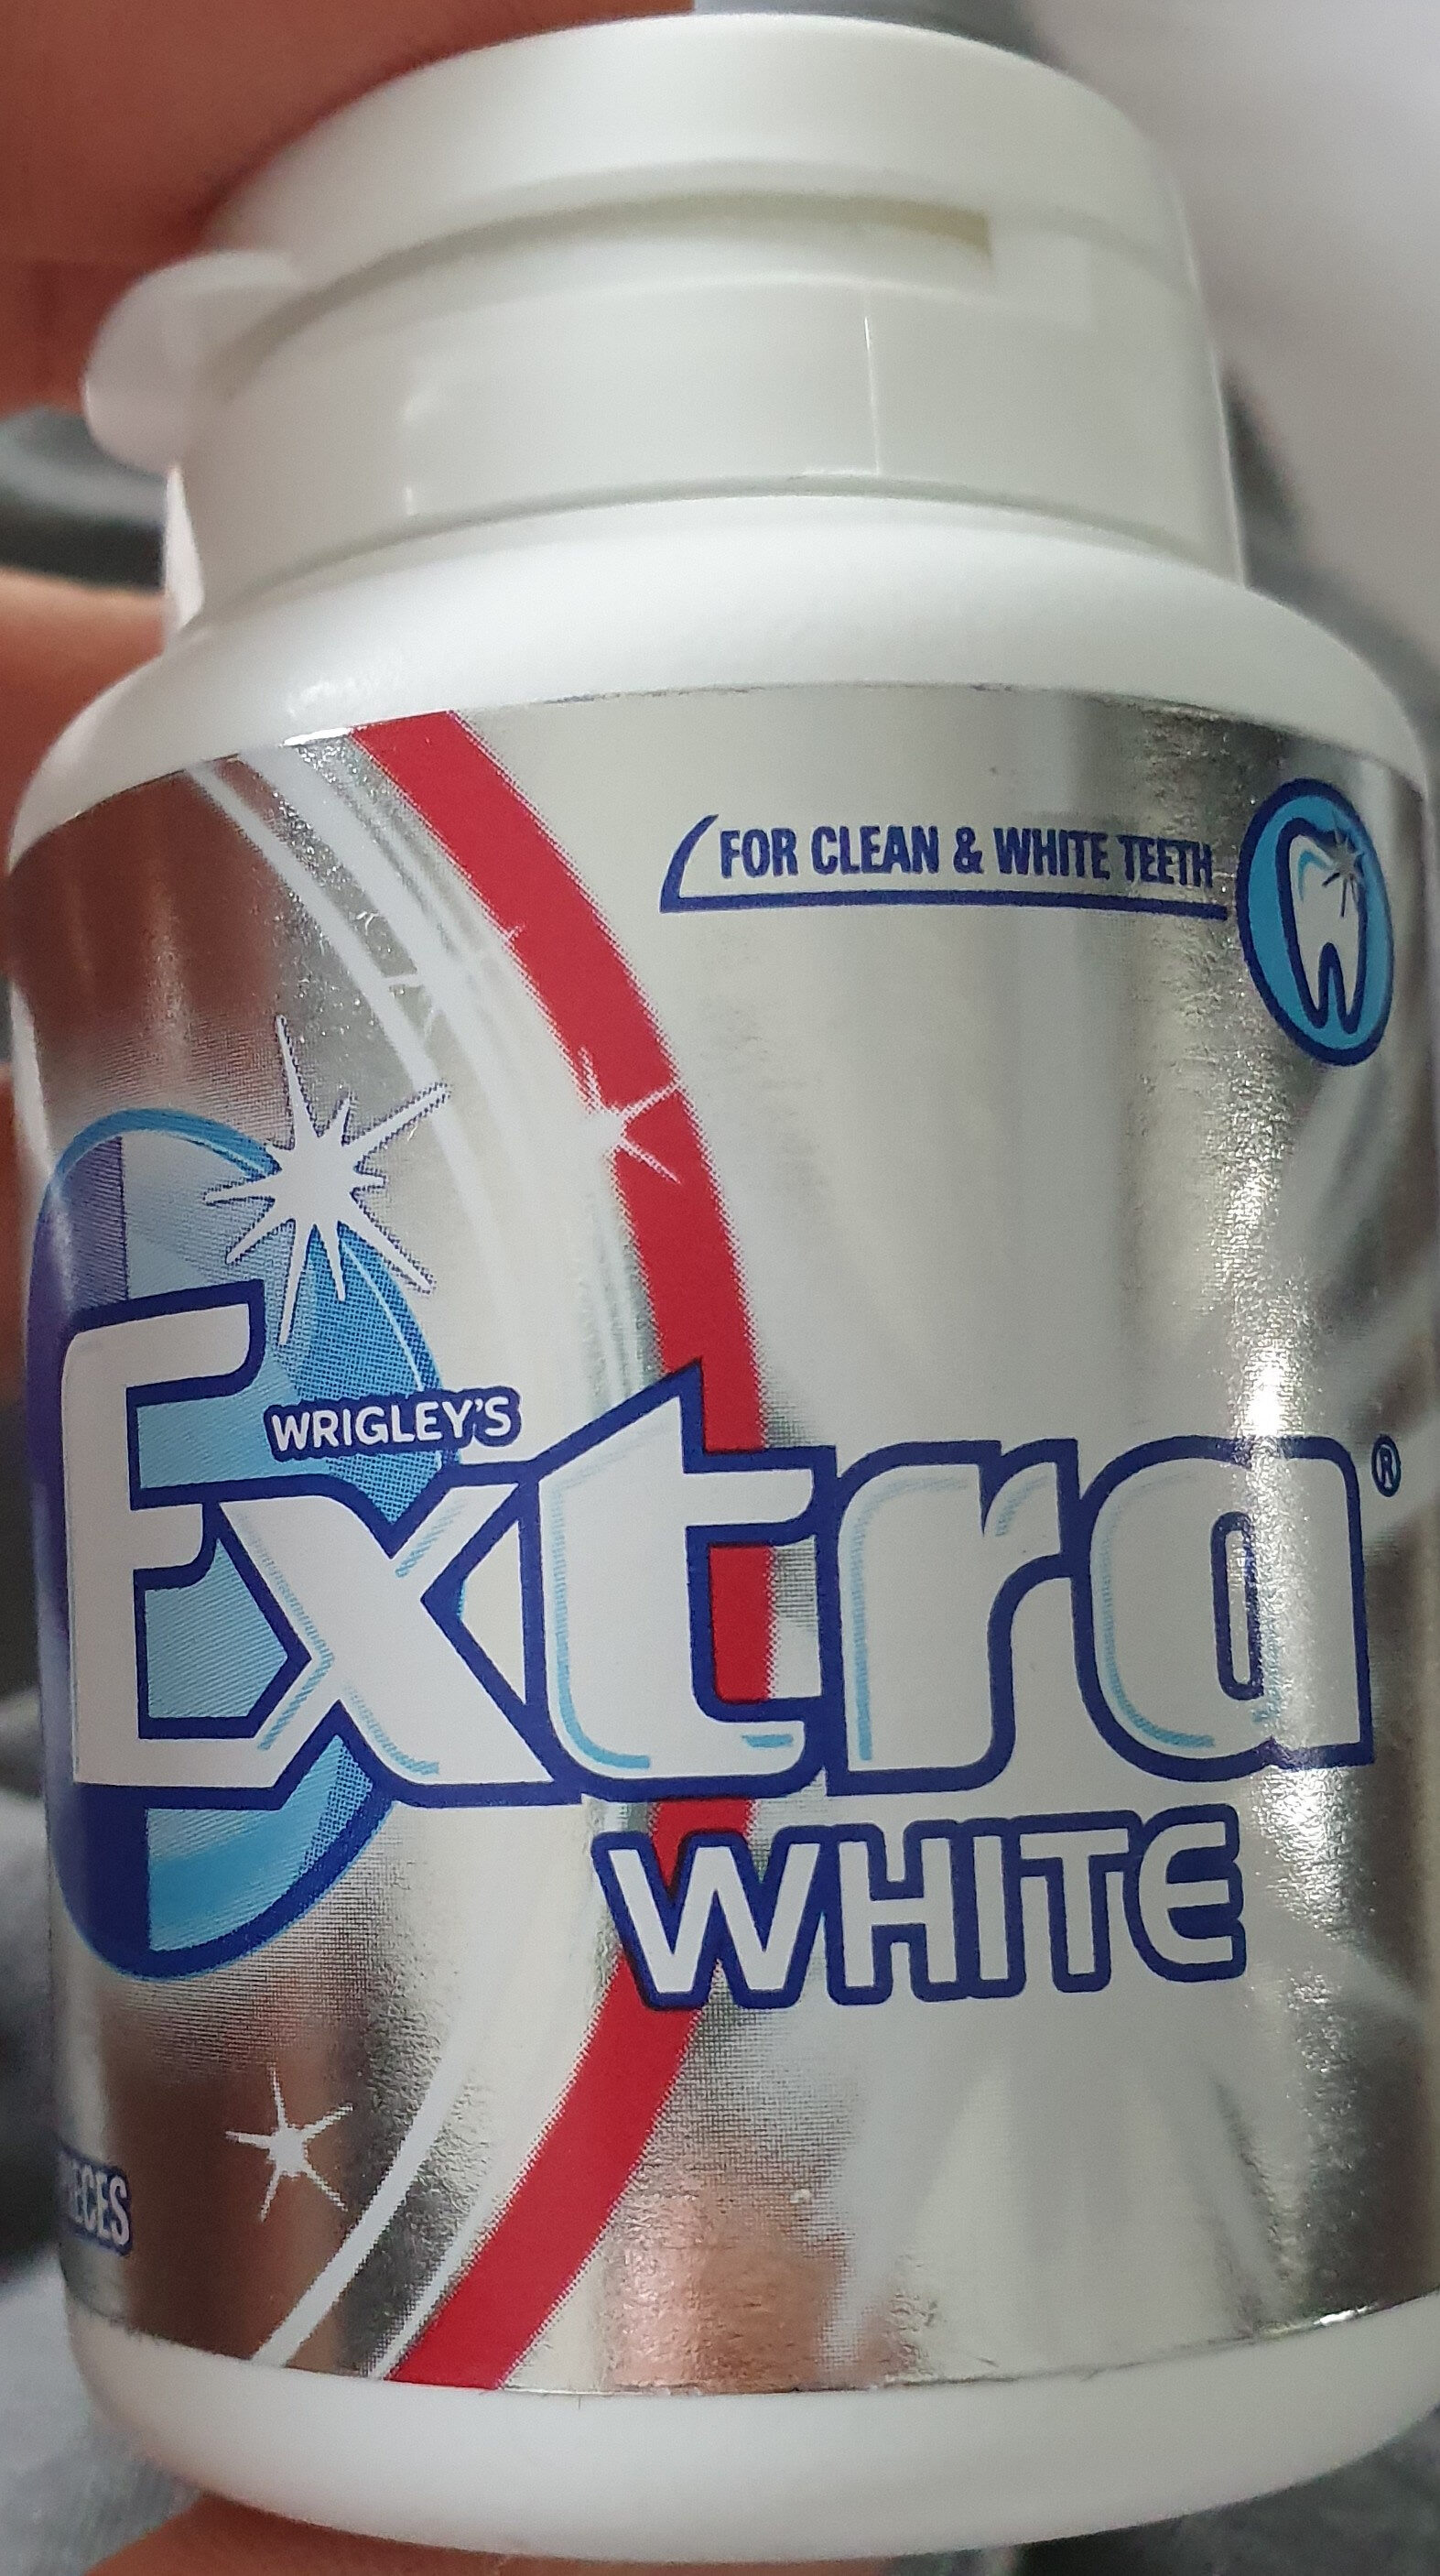 Extra White - Produit - en